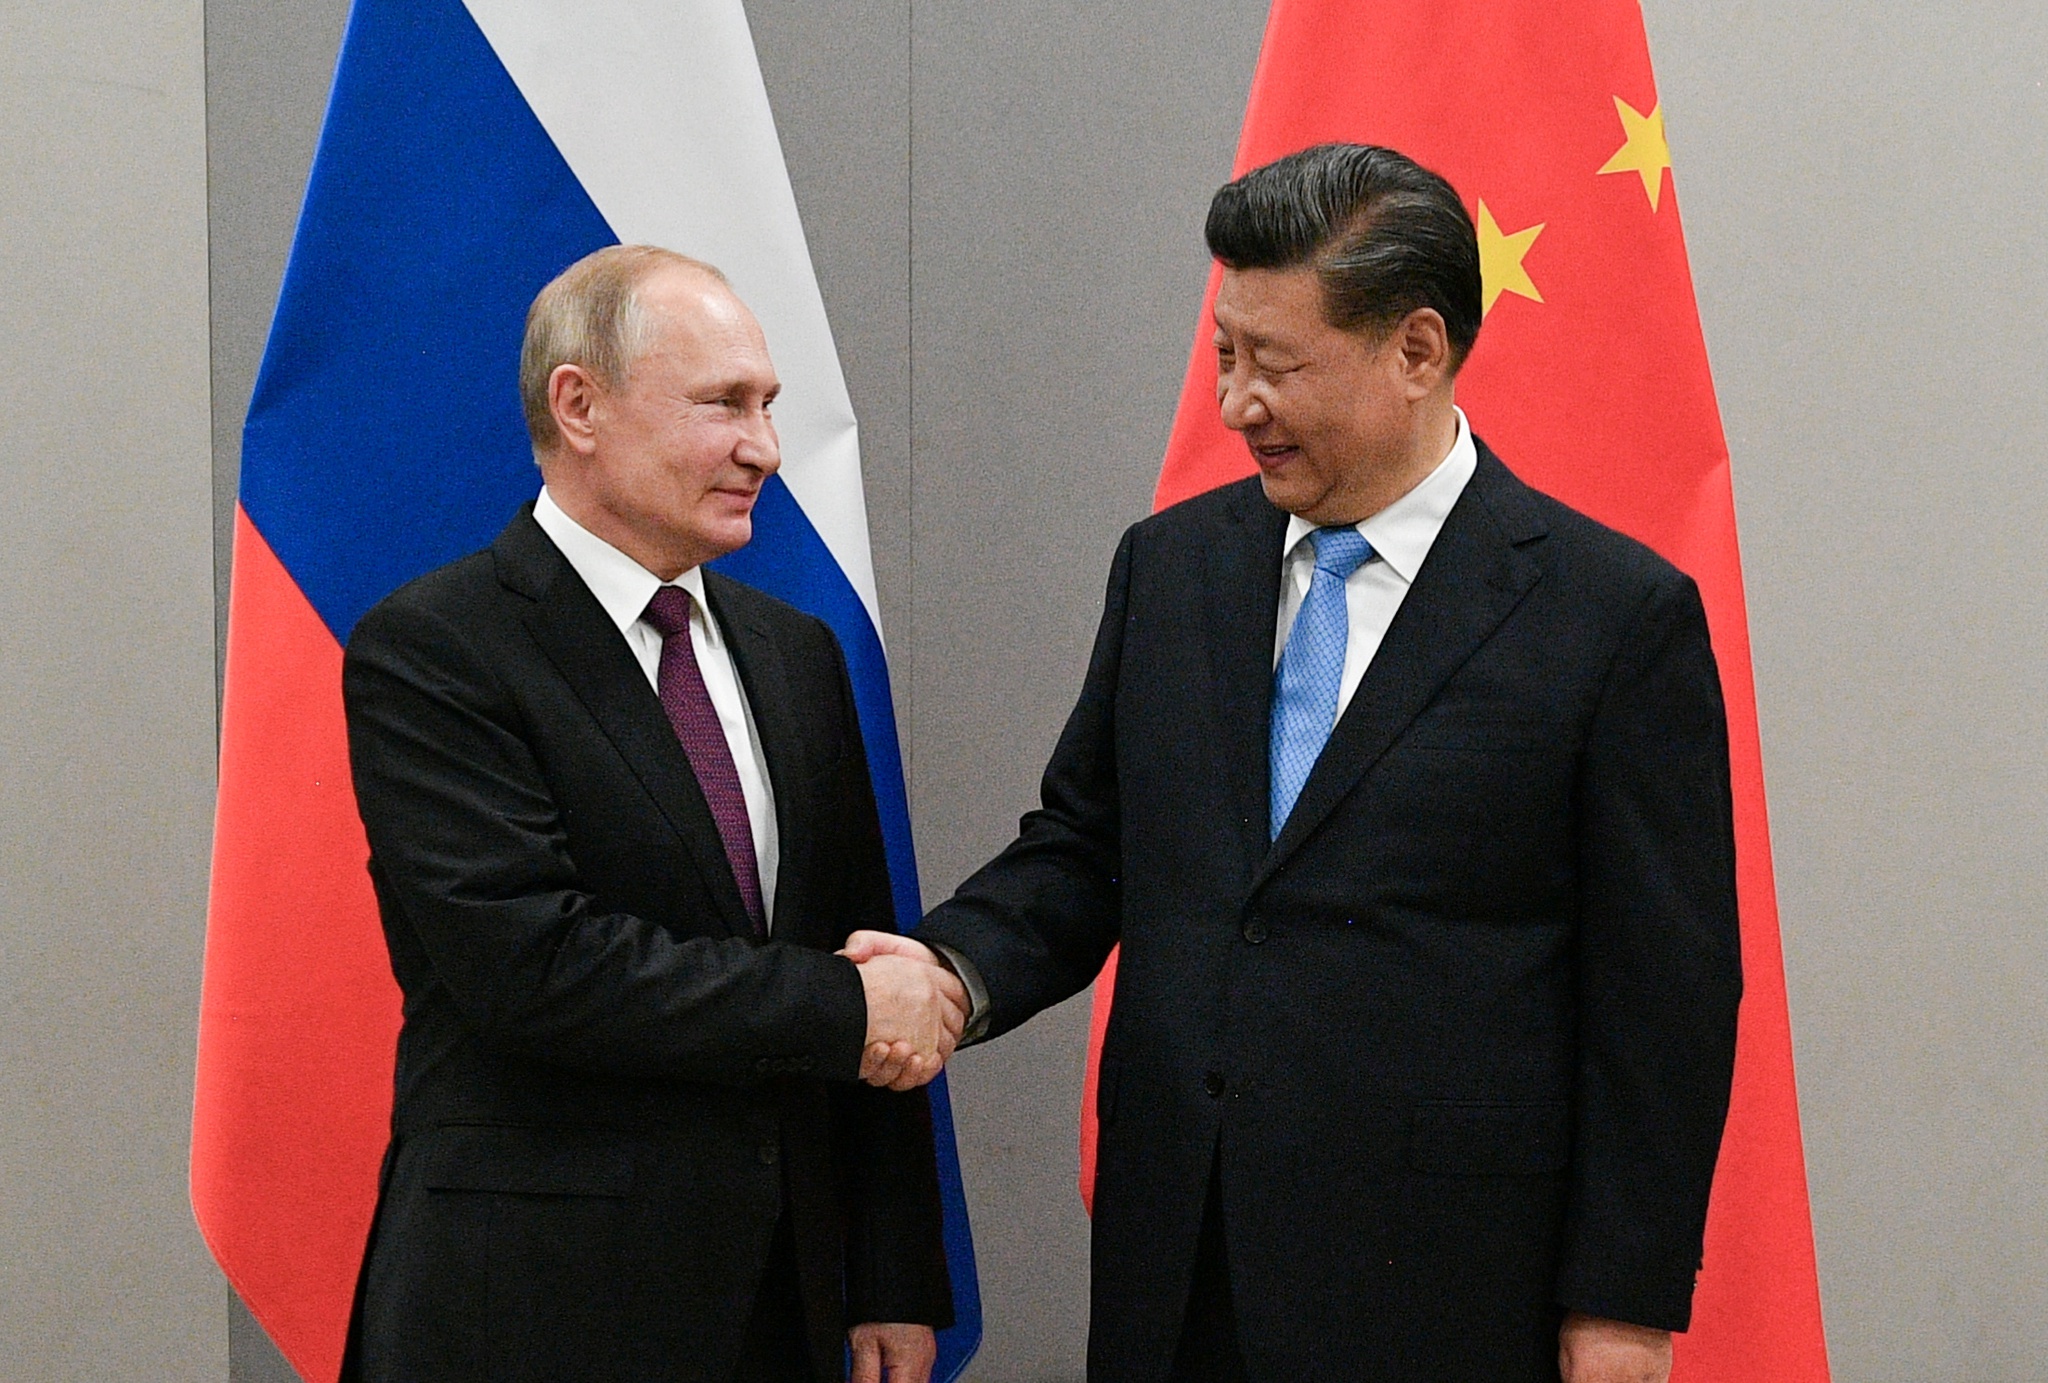 Mỹ cảnh báo Trung Quốc sau khi ông Tập Cận Bình điện đàm với Tổng thống Putin - ảnh 1